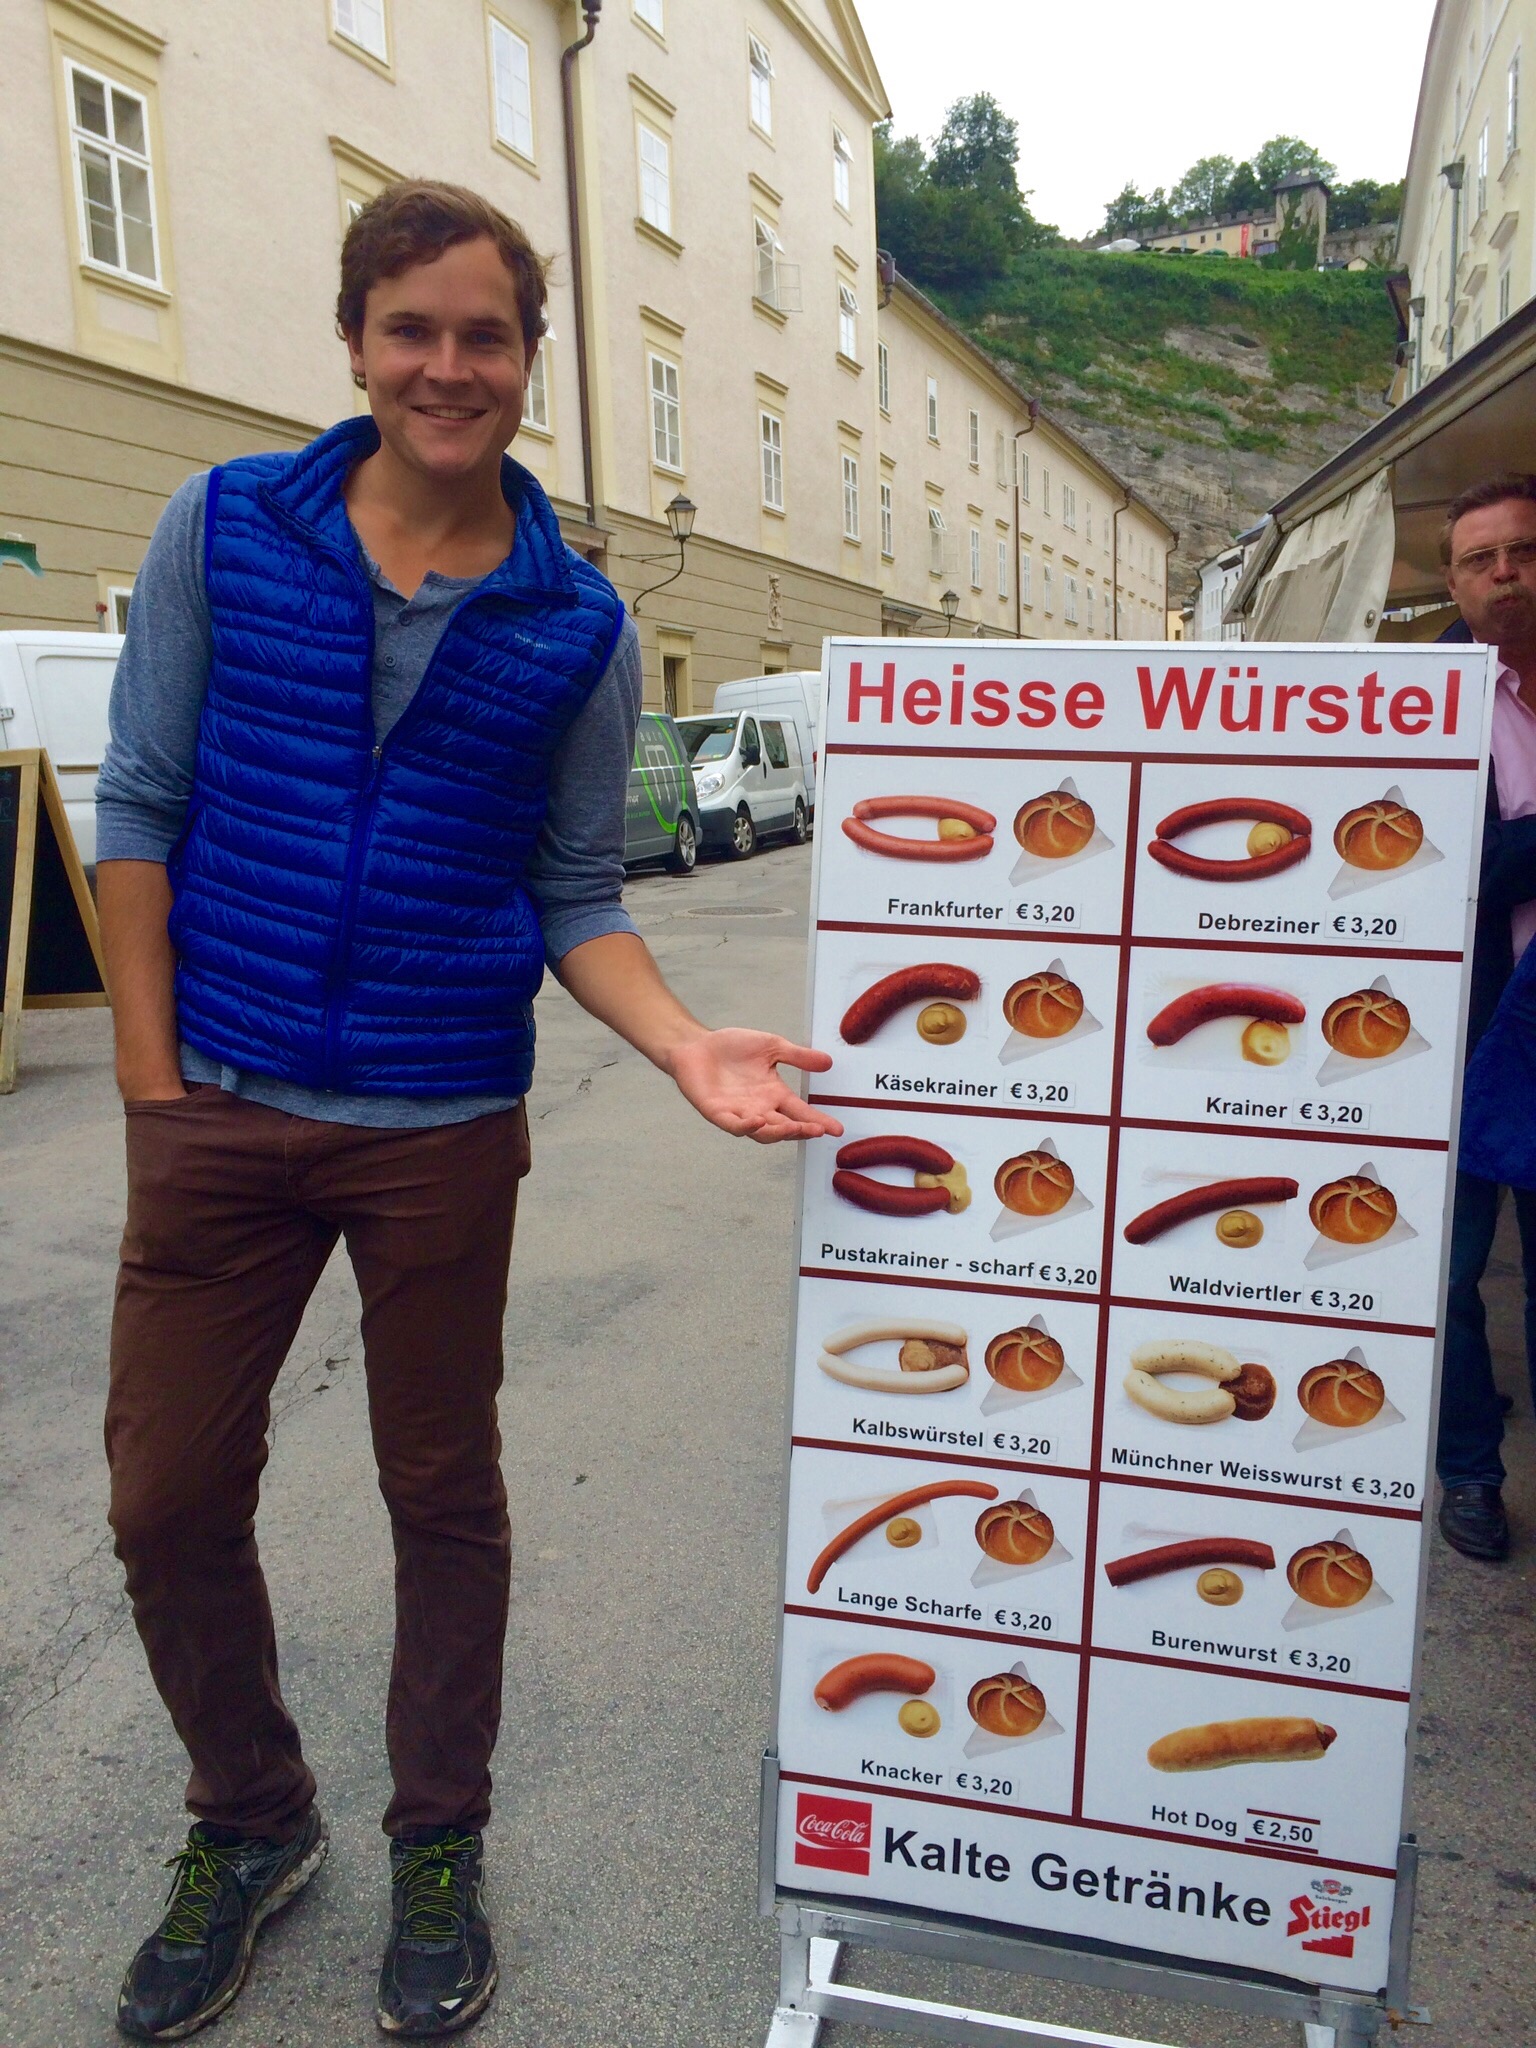 Salzburg Würstl (Sausage) 101